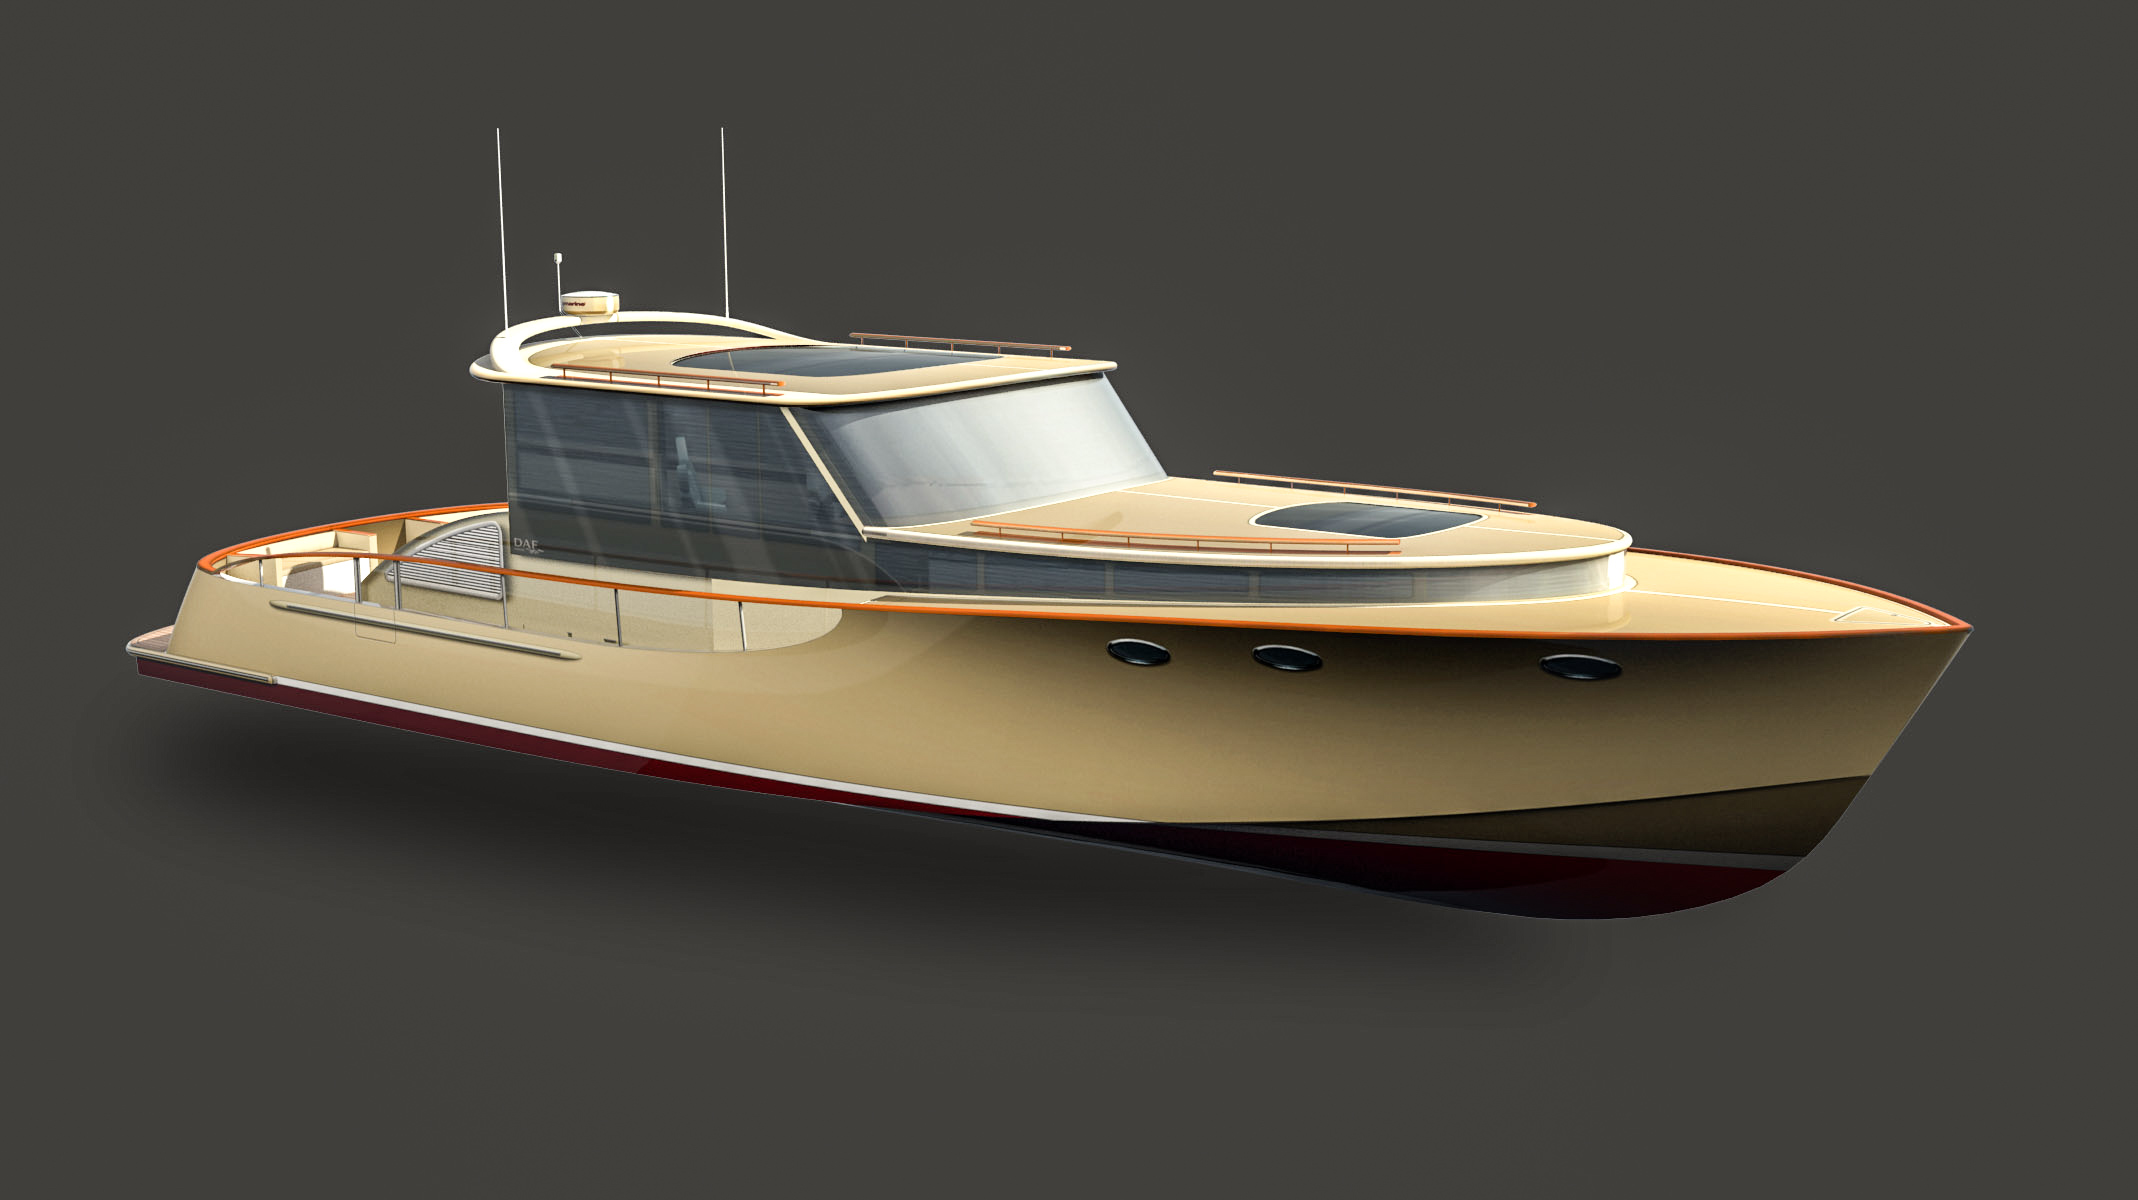 DAF Renderings 60ft Motor Yacht